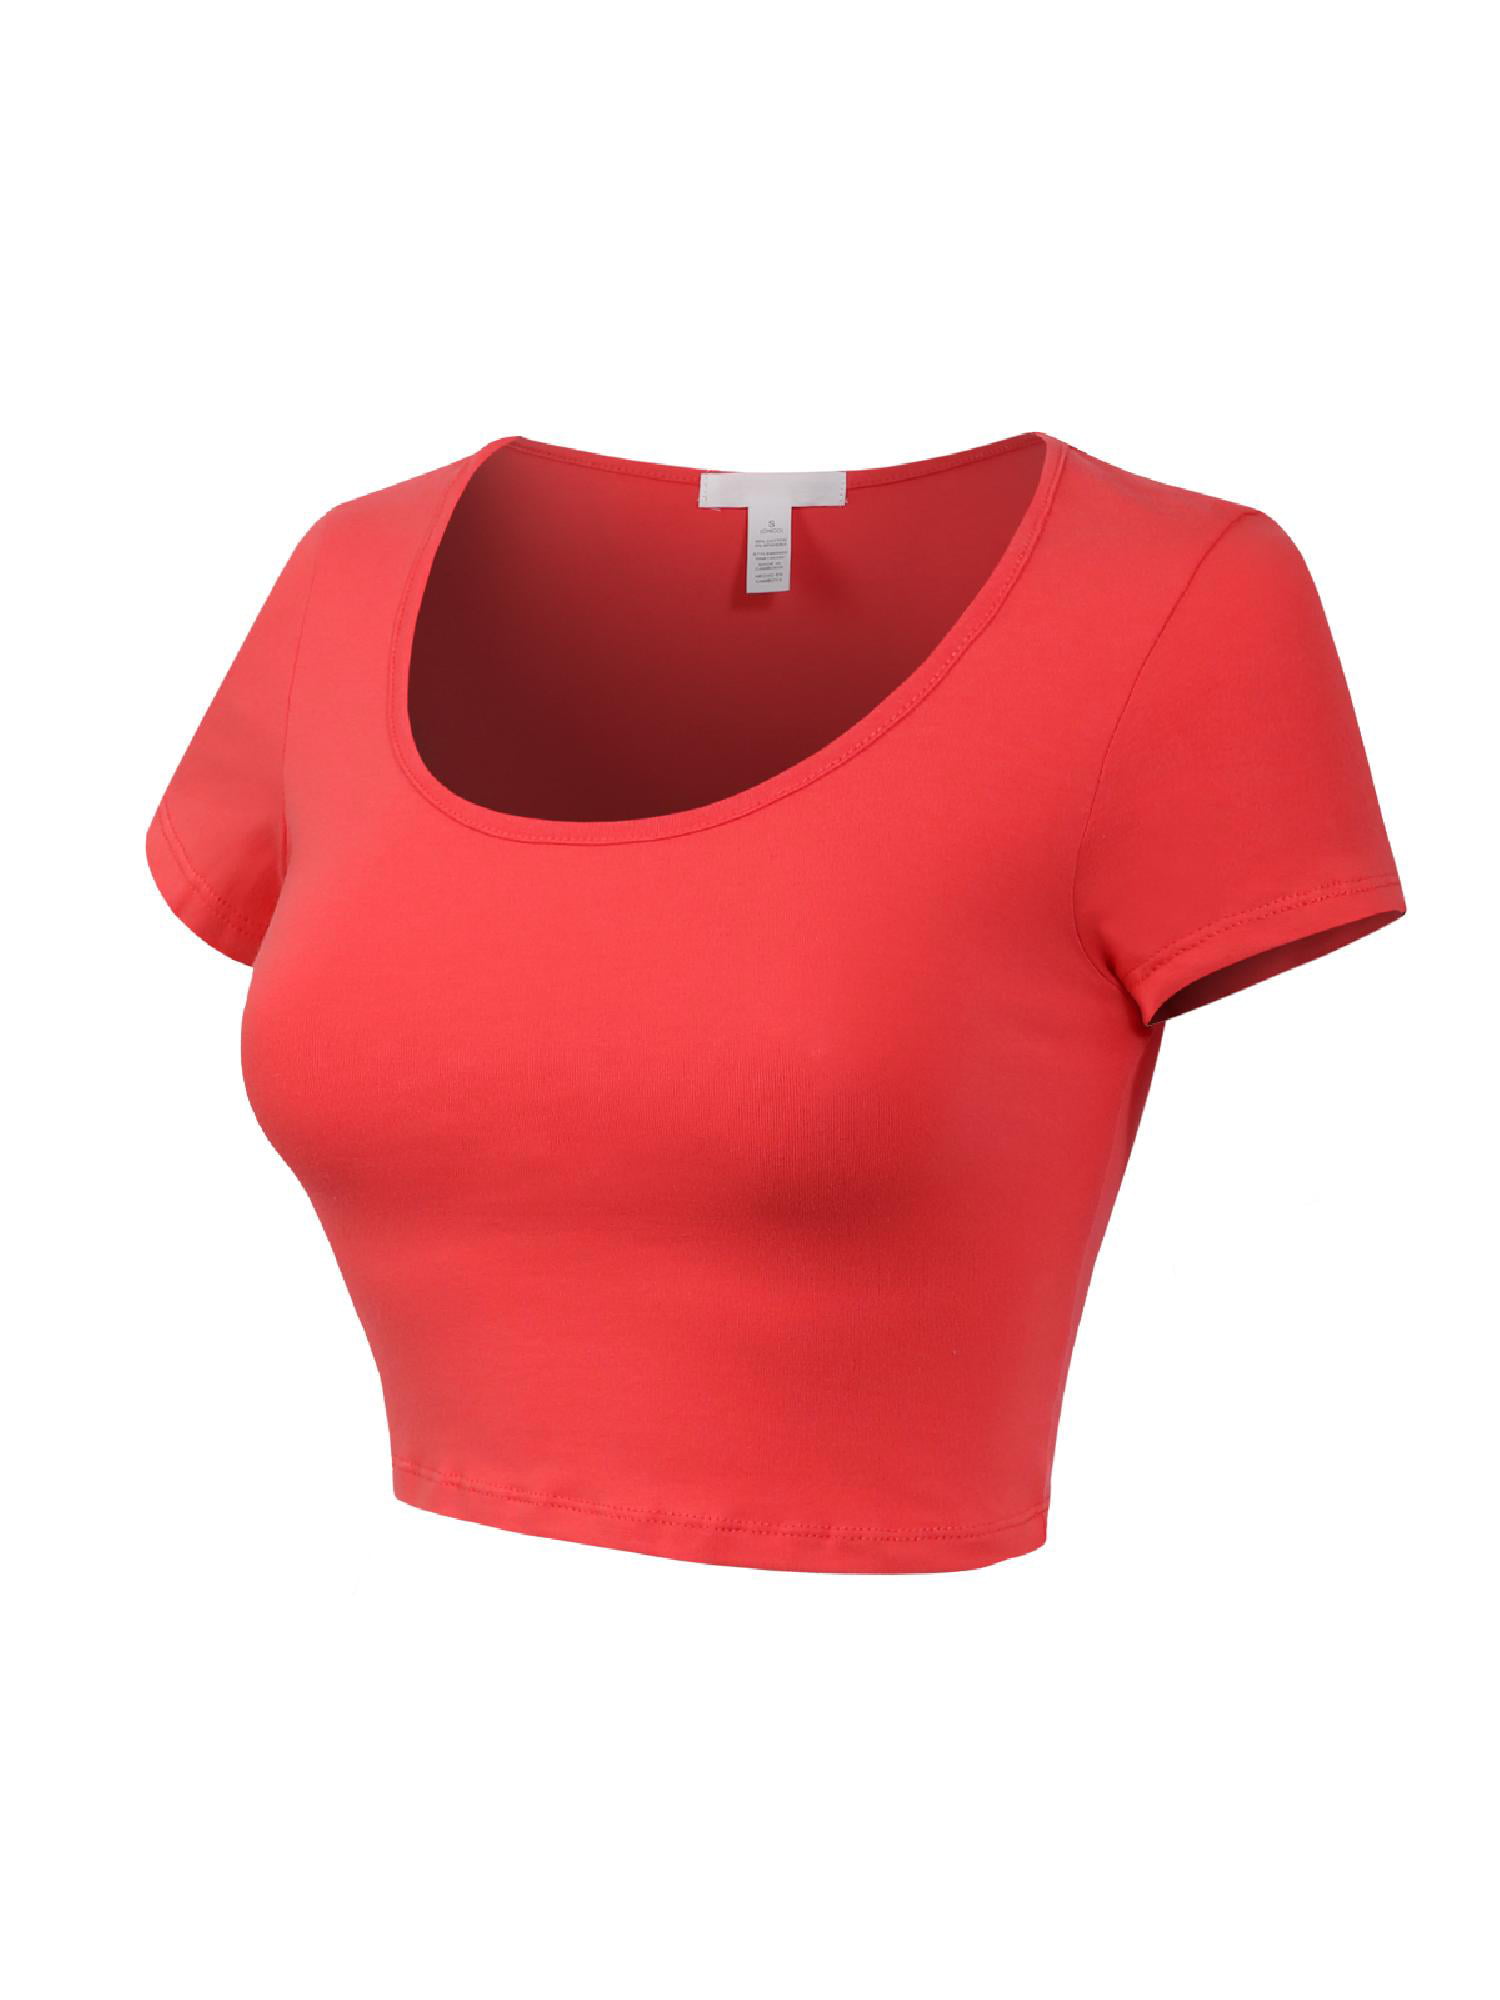 MixMatchy Women's Cotton Solid Scoop Neck Cap Sleeve Crop Top Shirt 